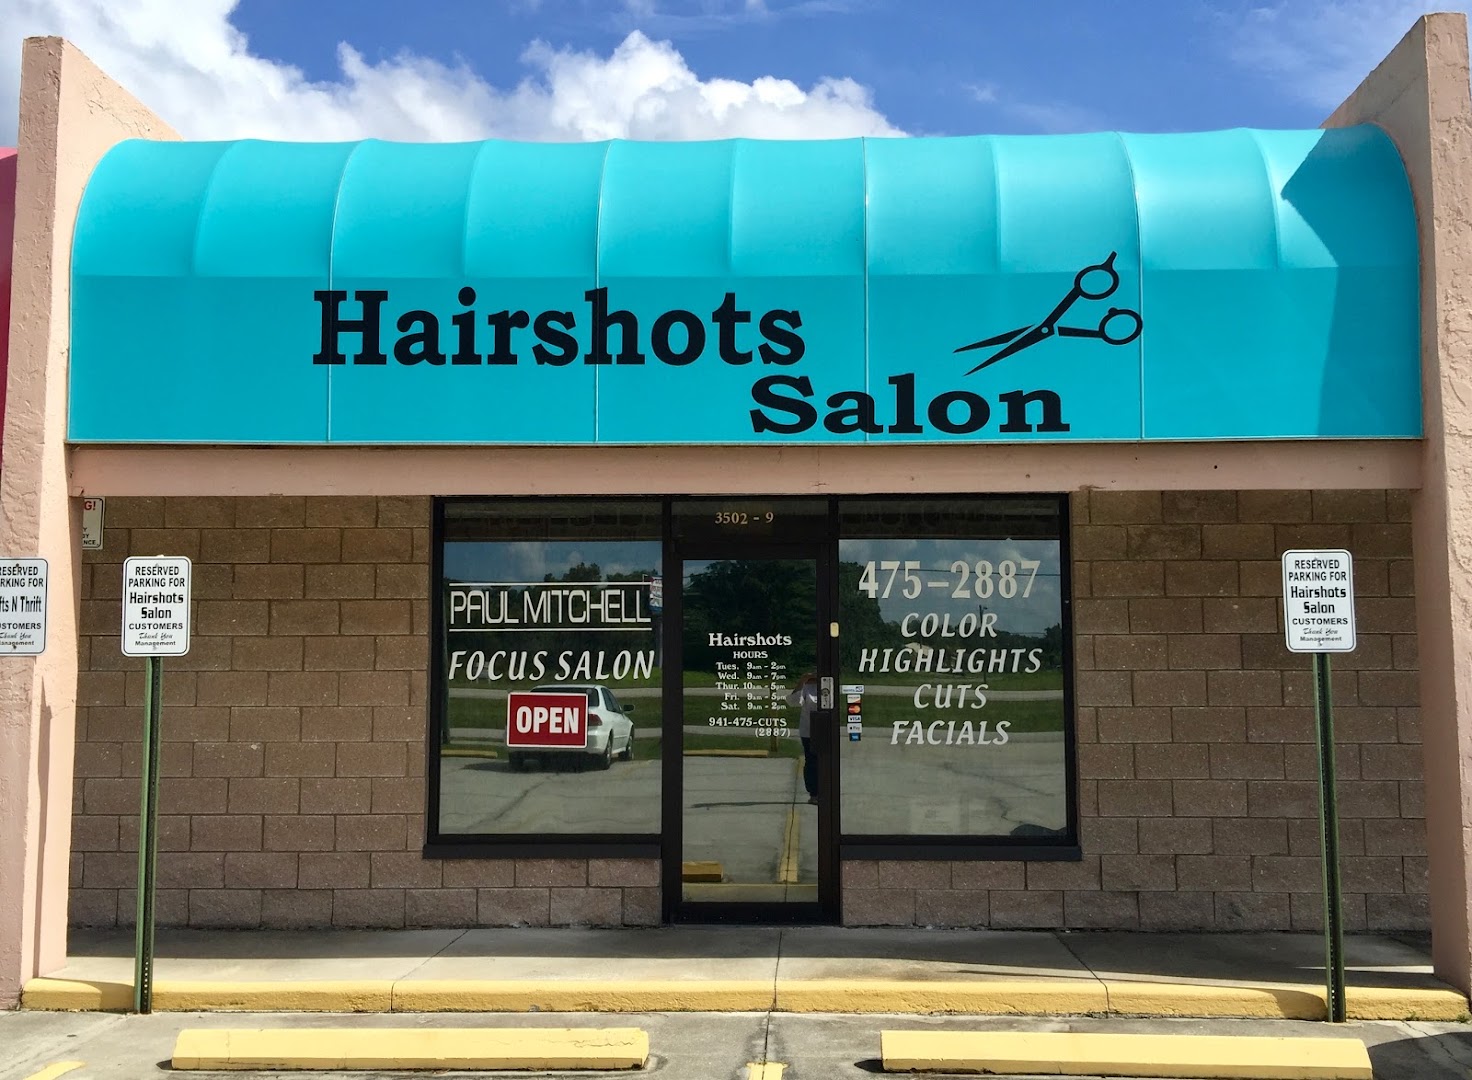 Hairshots Salon